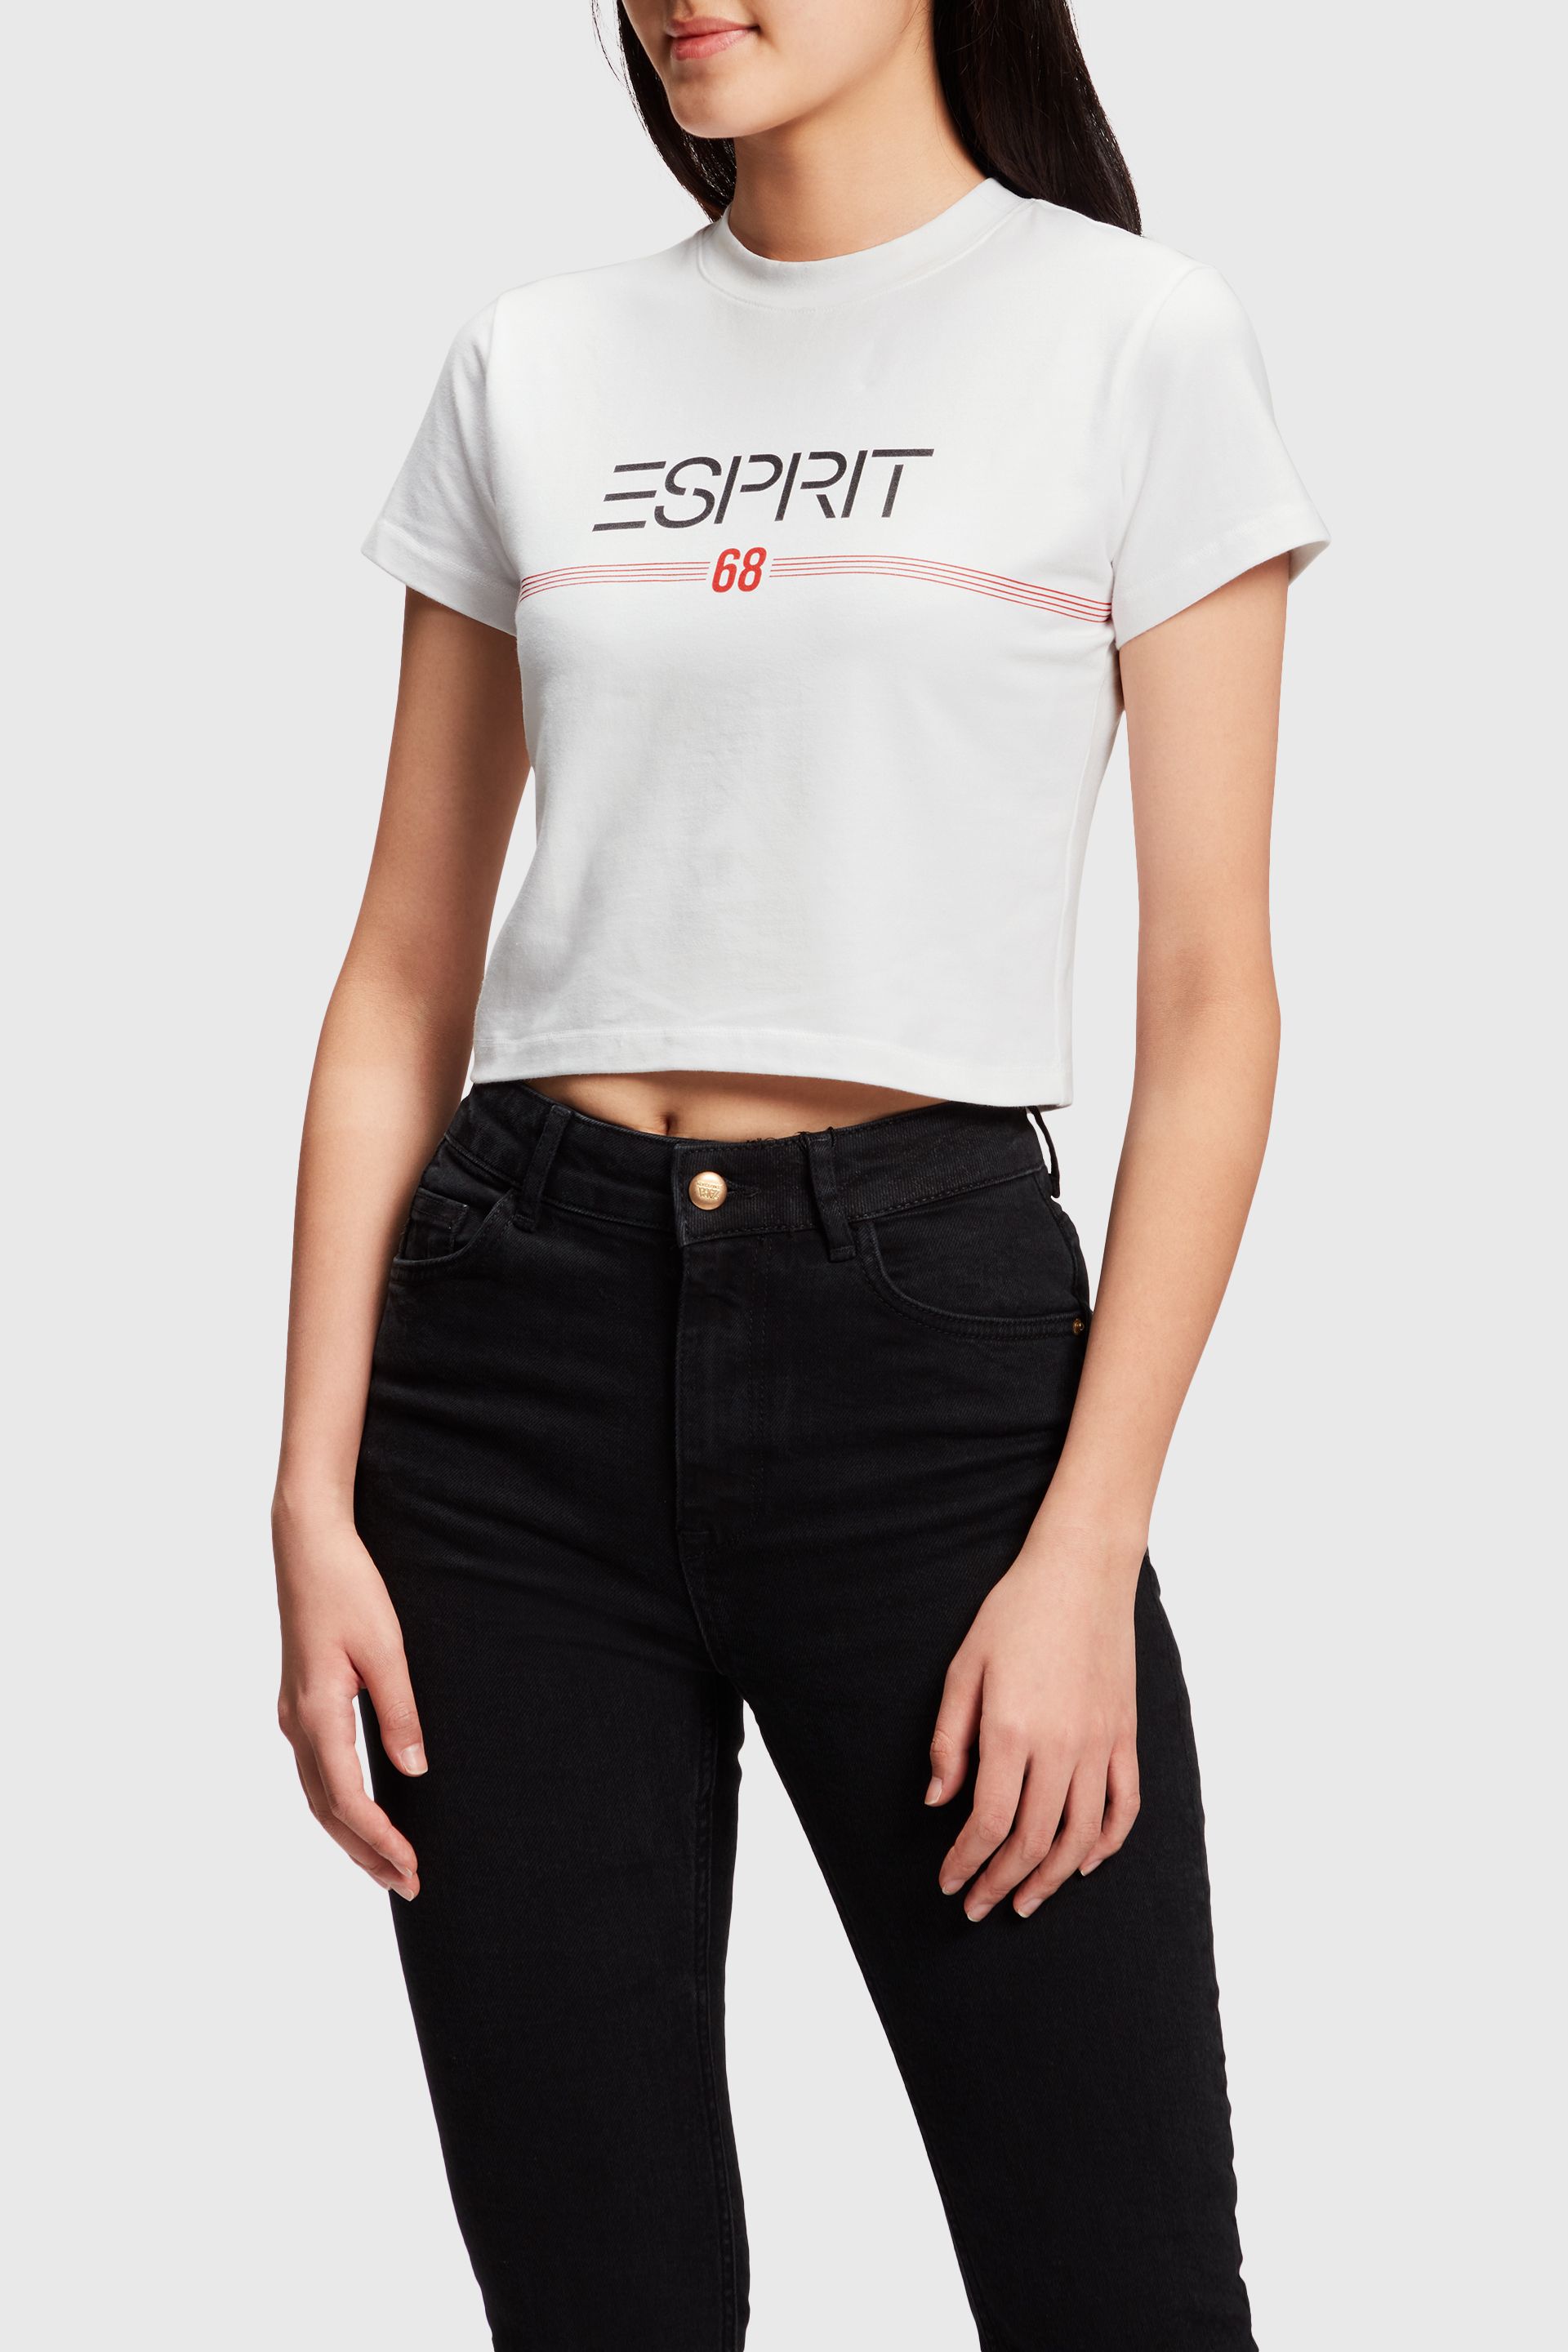 ESPRIT x Rest & Capsule Cropped T-shirt Esprit Store